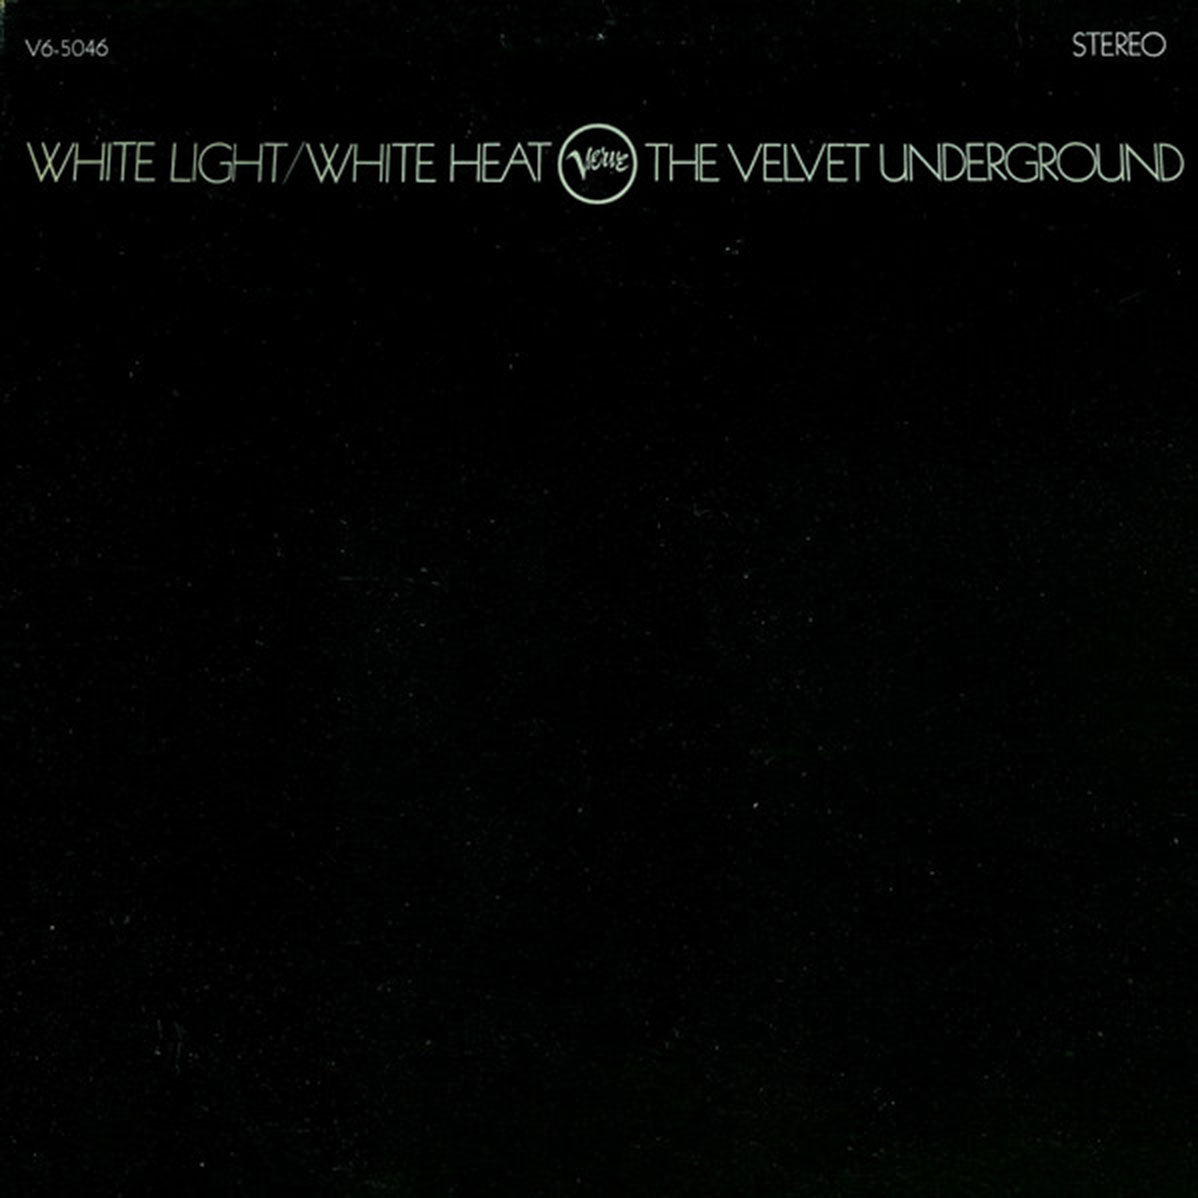 The Velvet Underground – White Light/White Heat - US Pressing - SEALED!